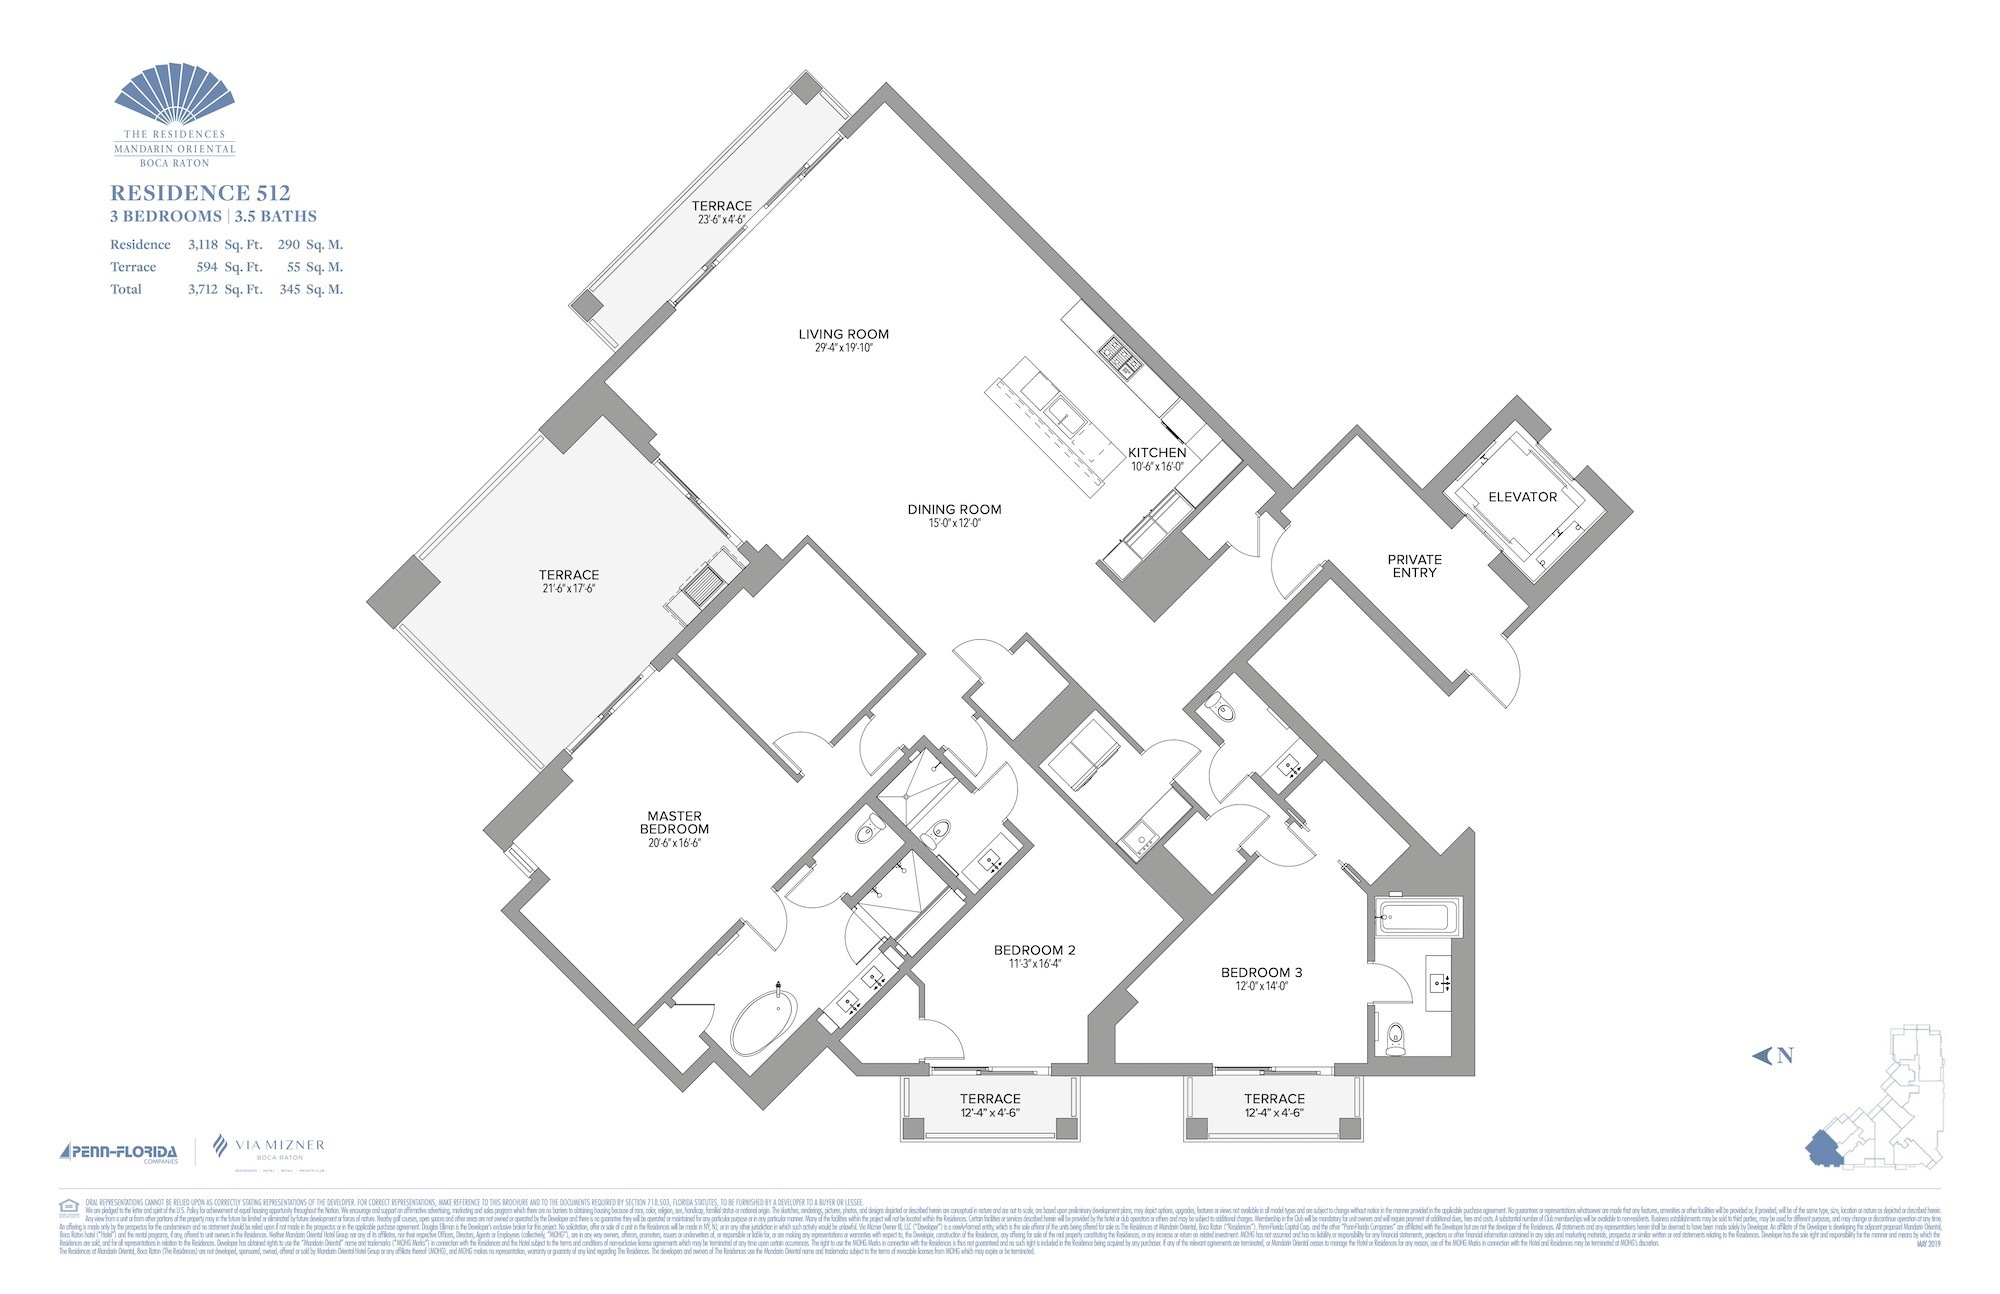 Floor Plan for Residence at Mandarin Oriental Floorplans, Residence 512